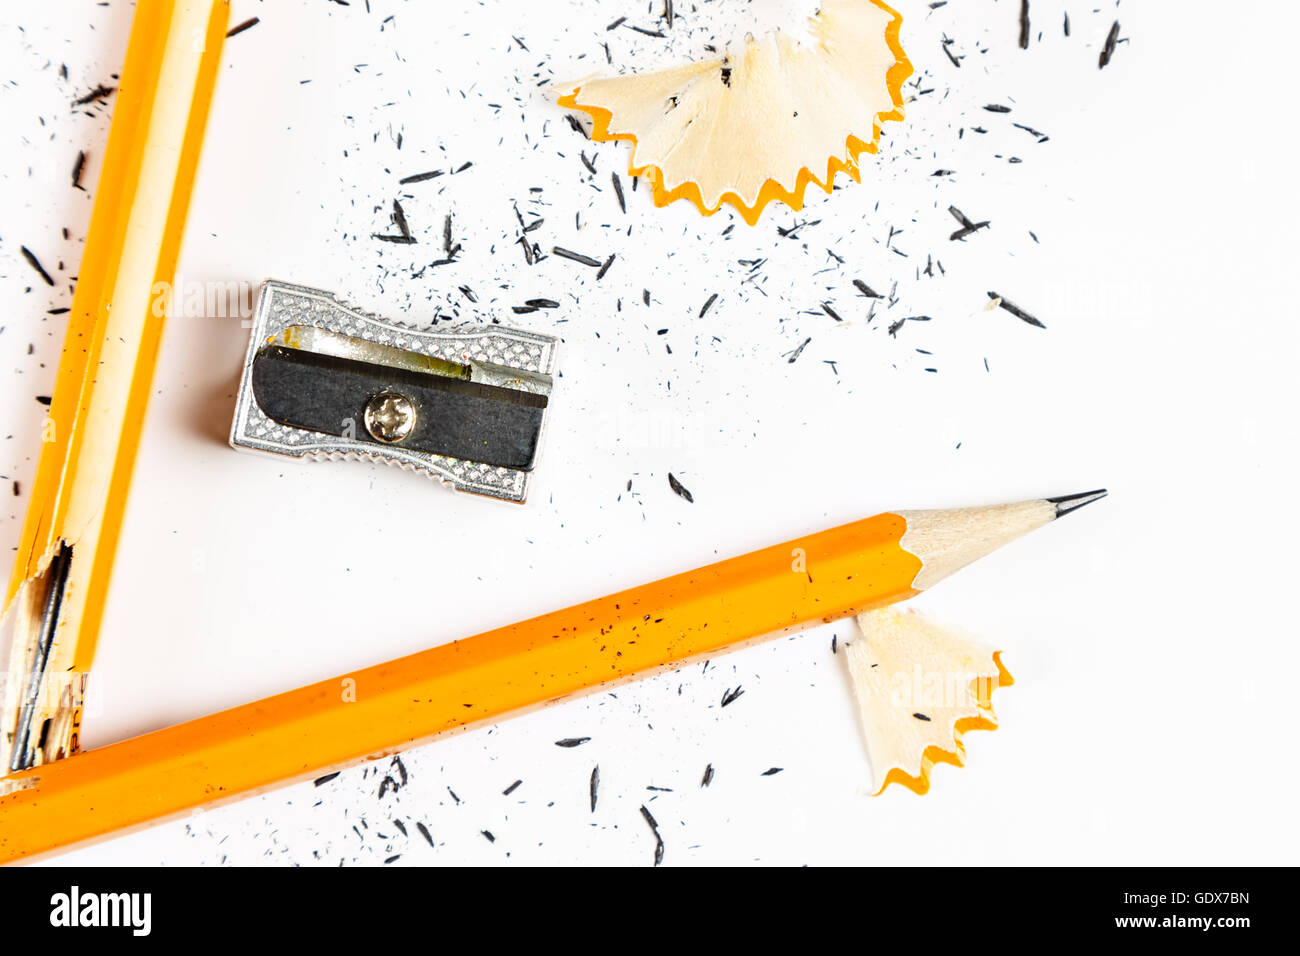 Bleistift, Bleistift und Anspitzer Metallspäne auf weißem Hintergrund. Horizontales Bild. Stockfoto